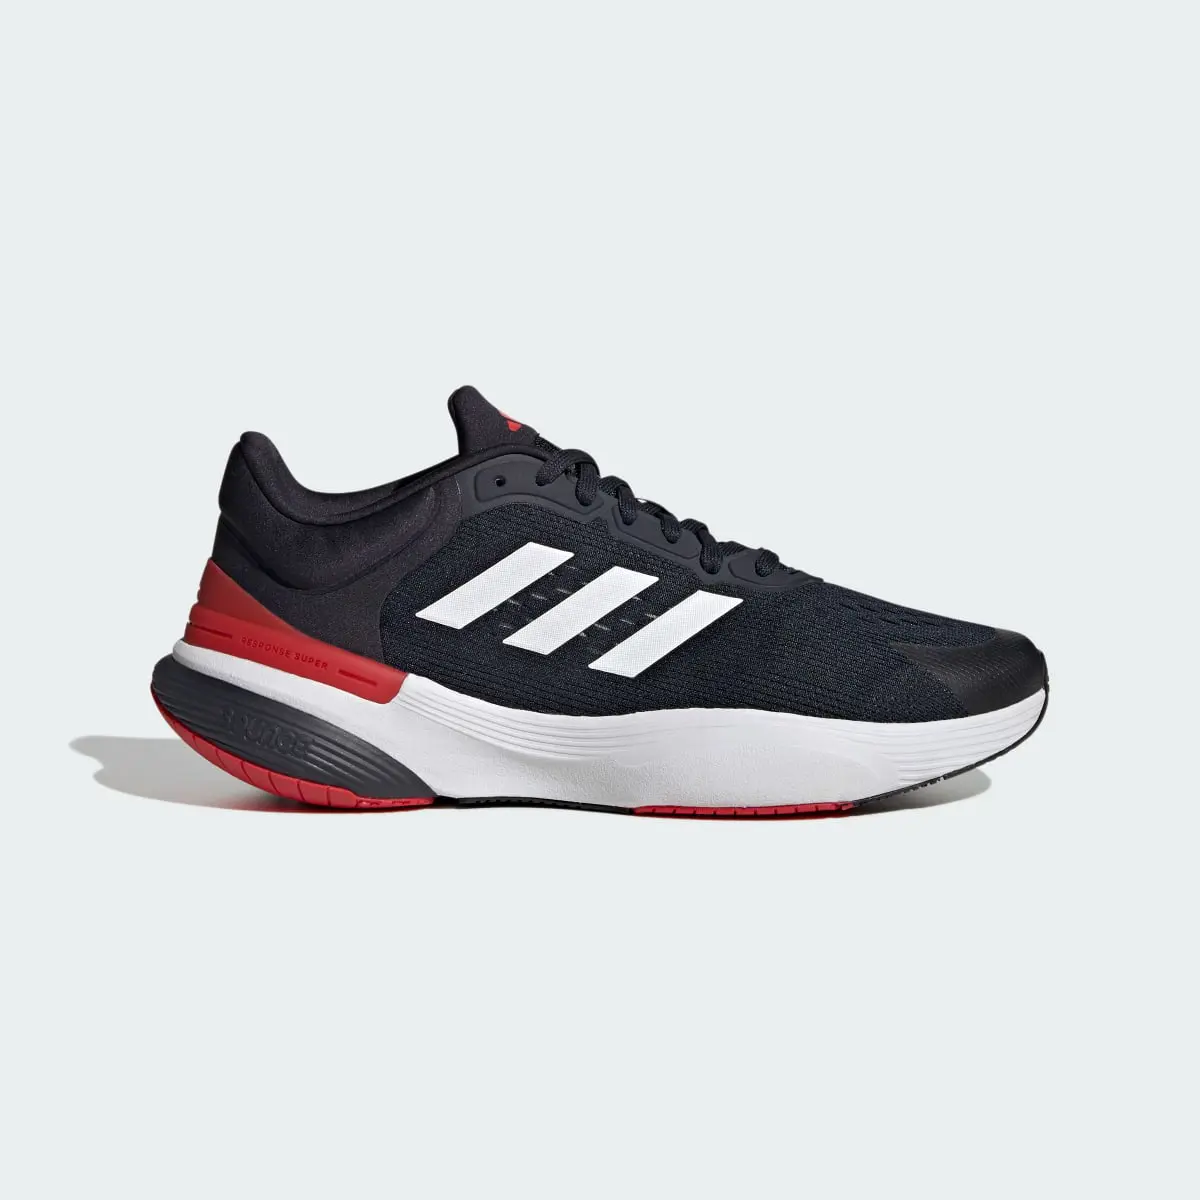 Adidas Response Super 2.0 Ayakkabı. 2